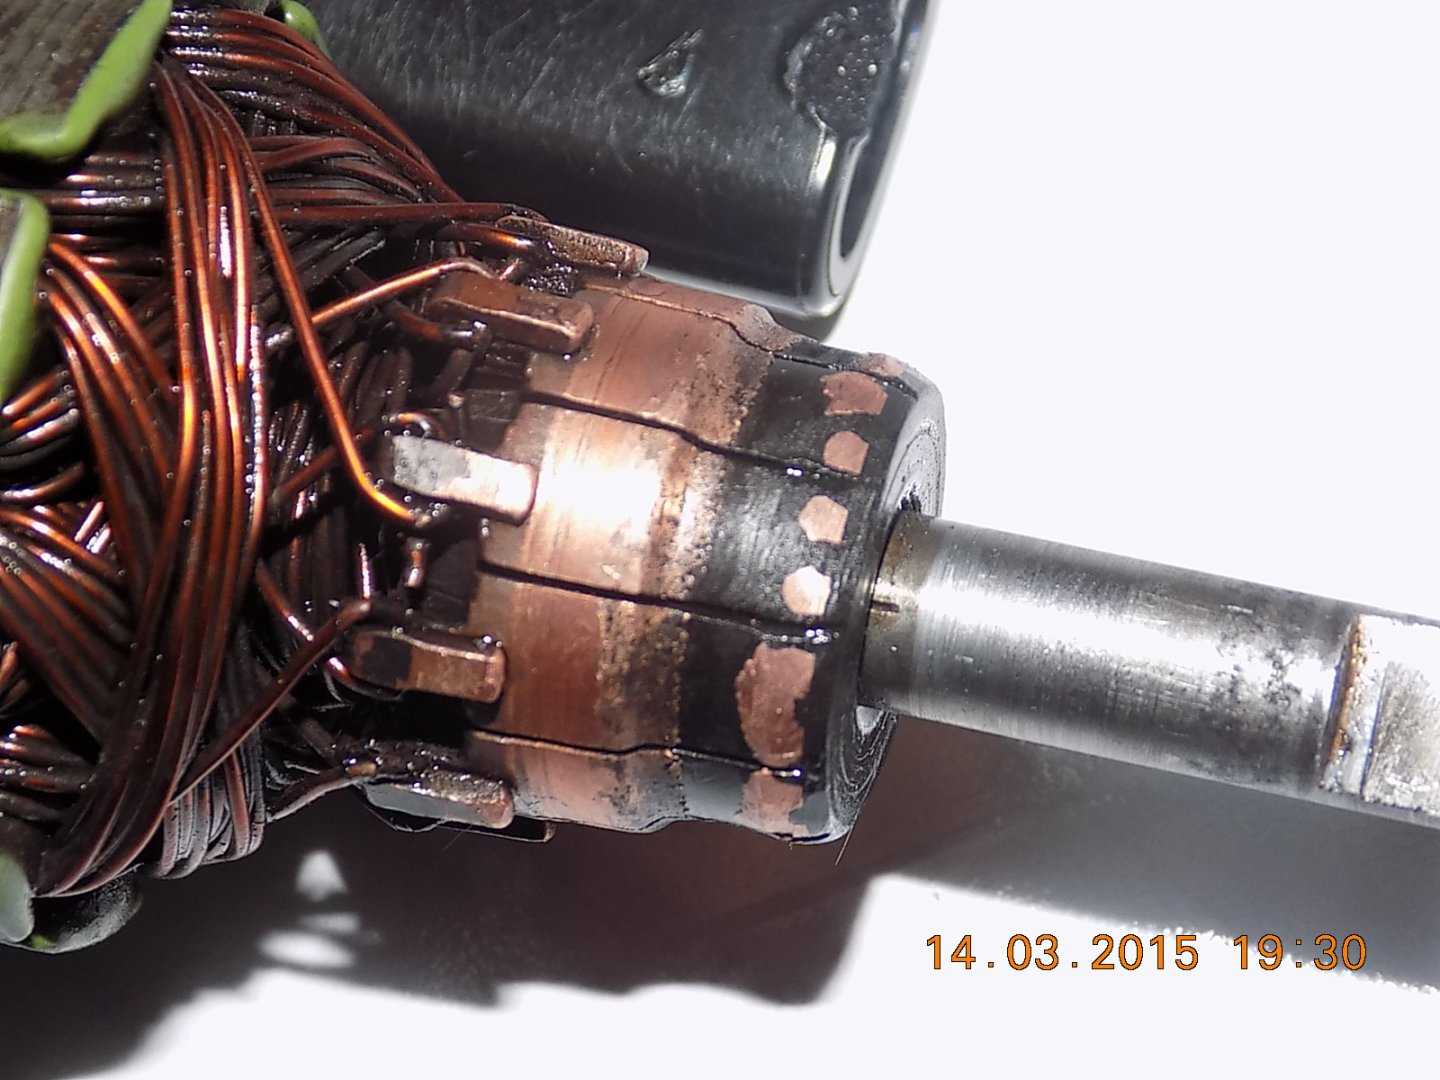 Как отремонтировать электродвигатель стиральной машины – ремонт бытовой техники своими руками